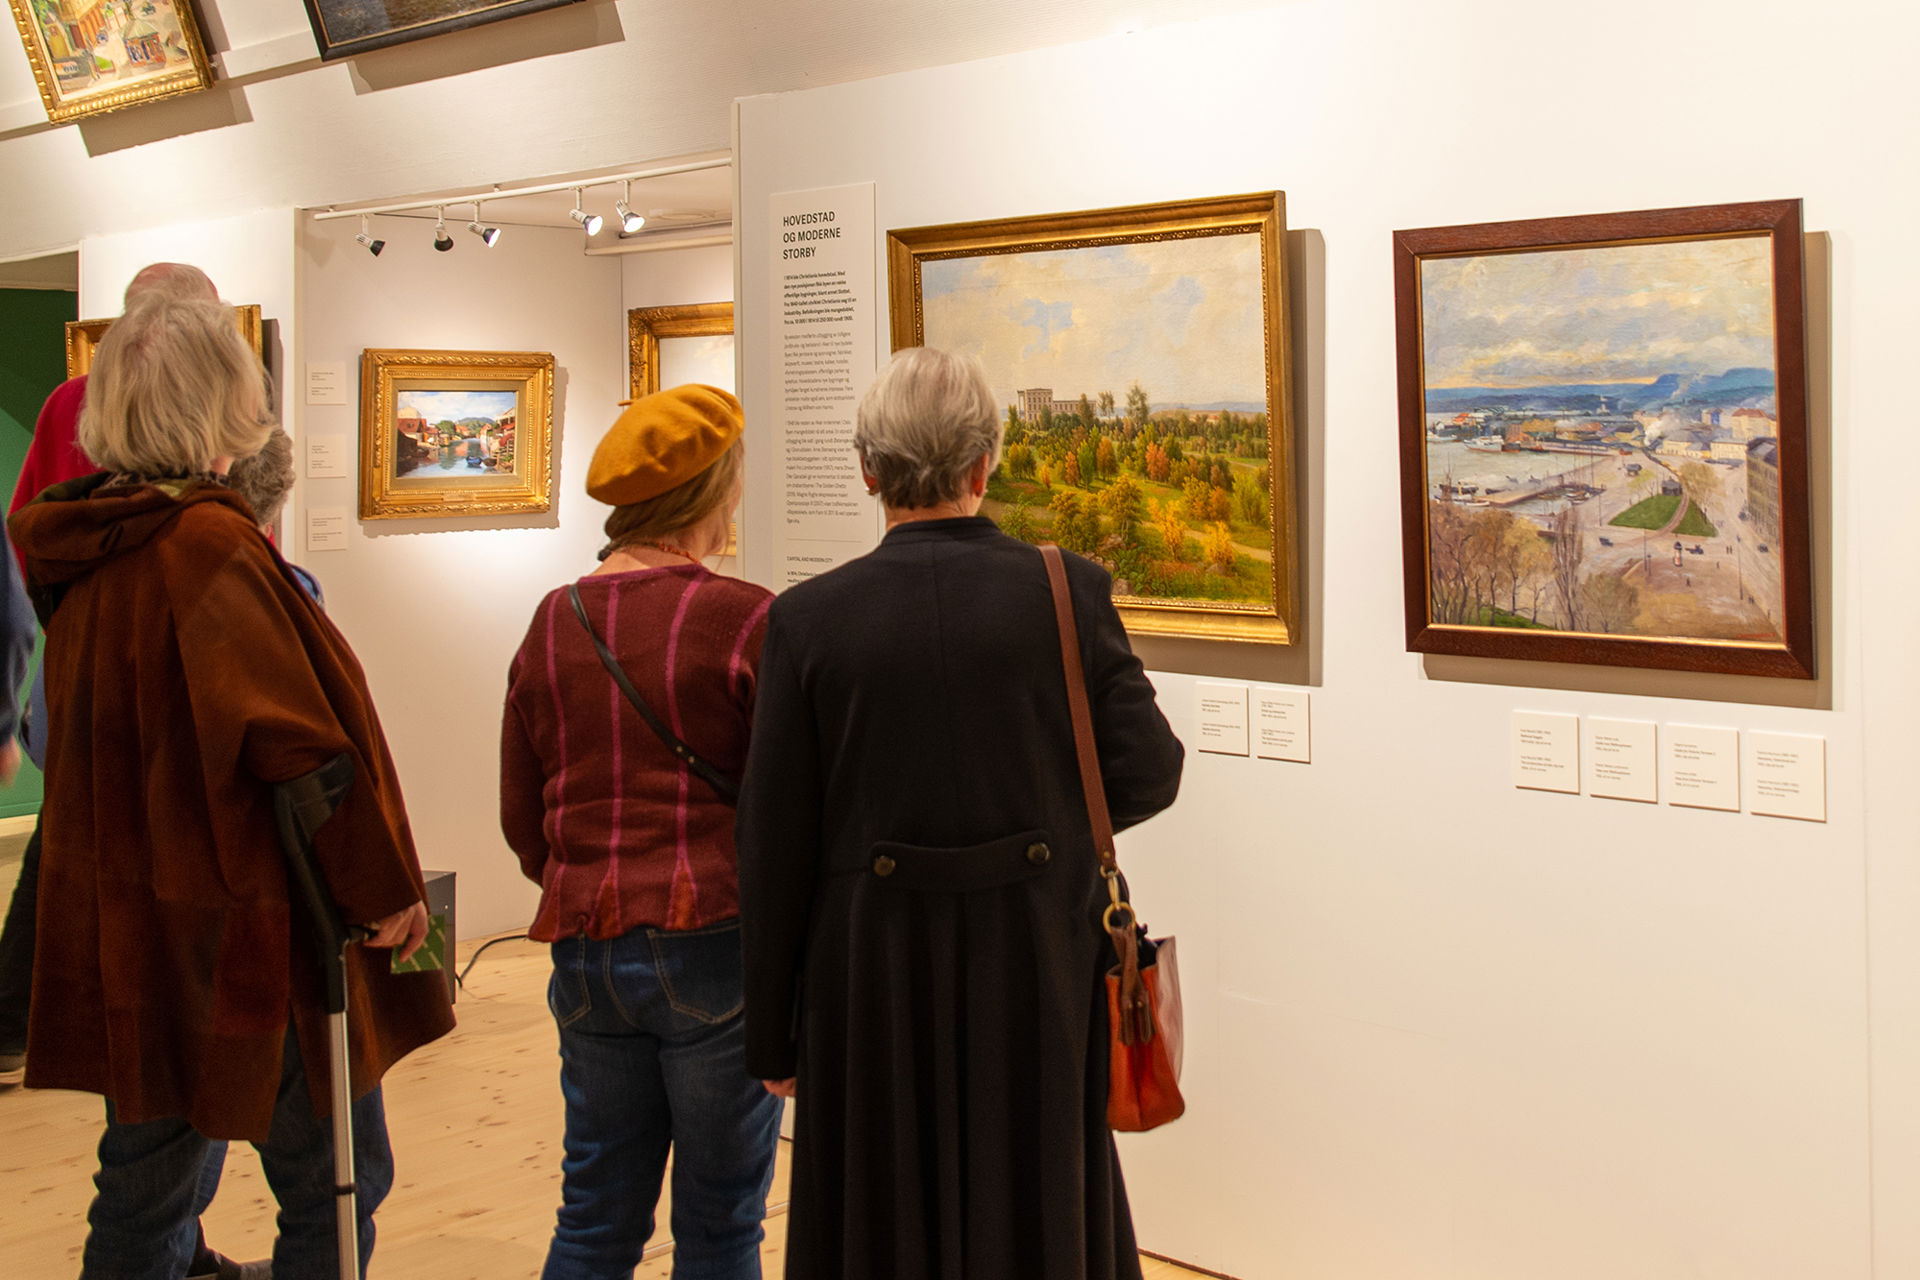 Fire mennesker står og ser på malerier av Oslo fra gamle dager.